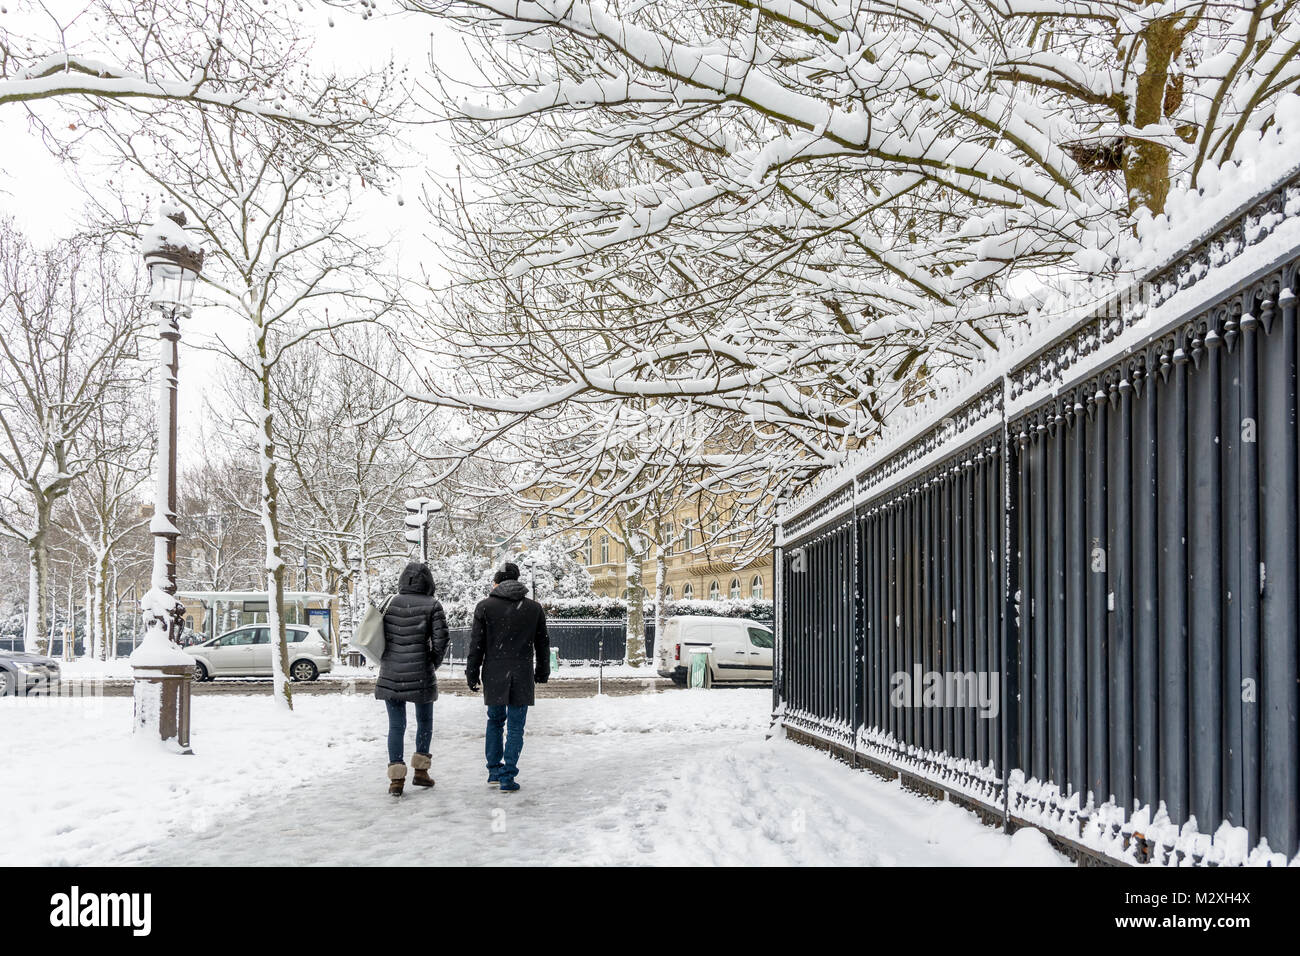 L'hiver à Paris dans la neige. Deux personnes enveloppé dans des vêtements chauds à pied sur un trottoir couvert de neige le long d'une haute silhouette noire clôture dans un quartier chic. Banque D'Images